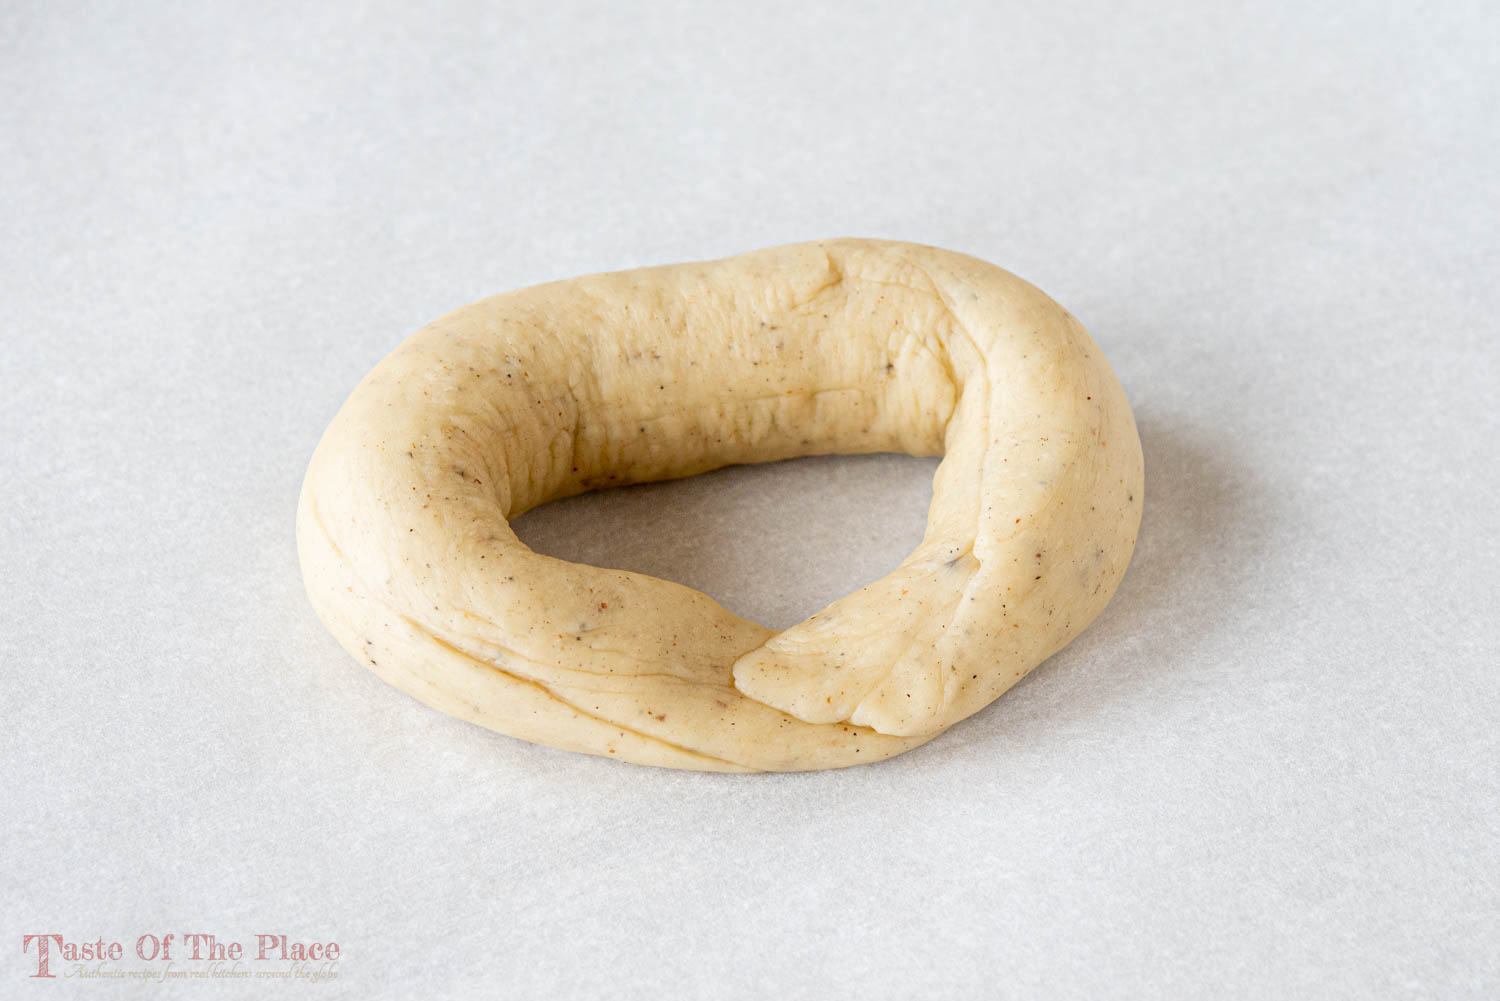 Swedish kringlor dough shaped into an O-shape